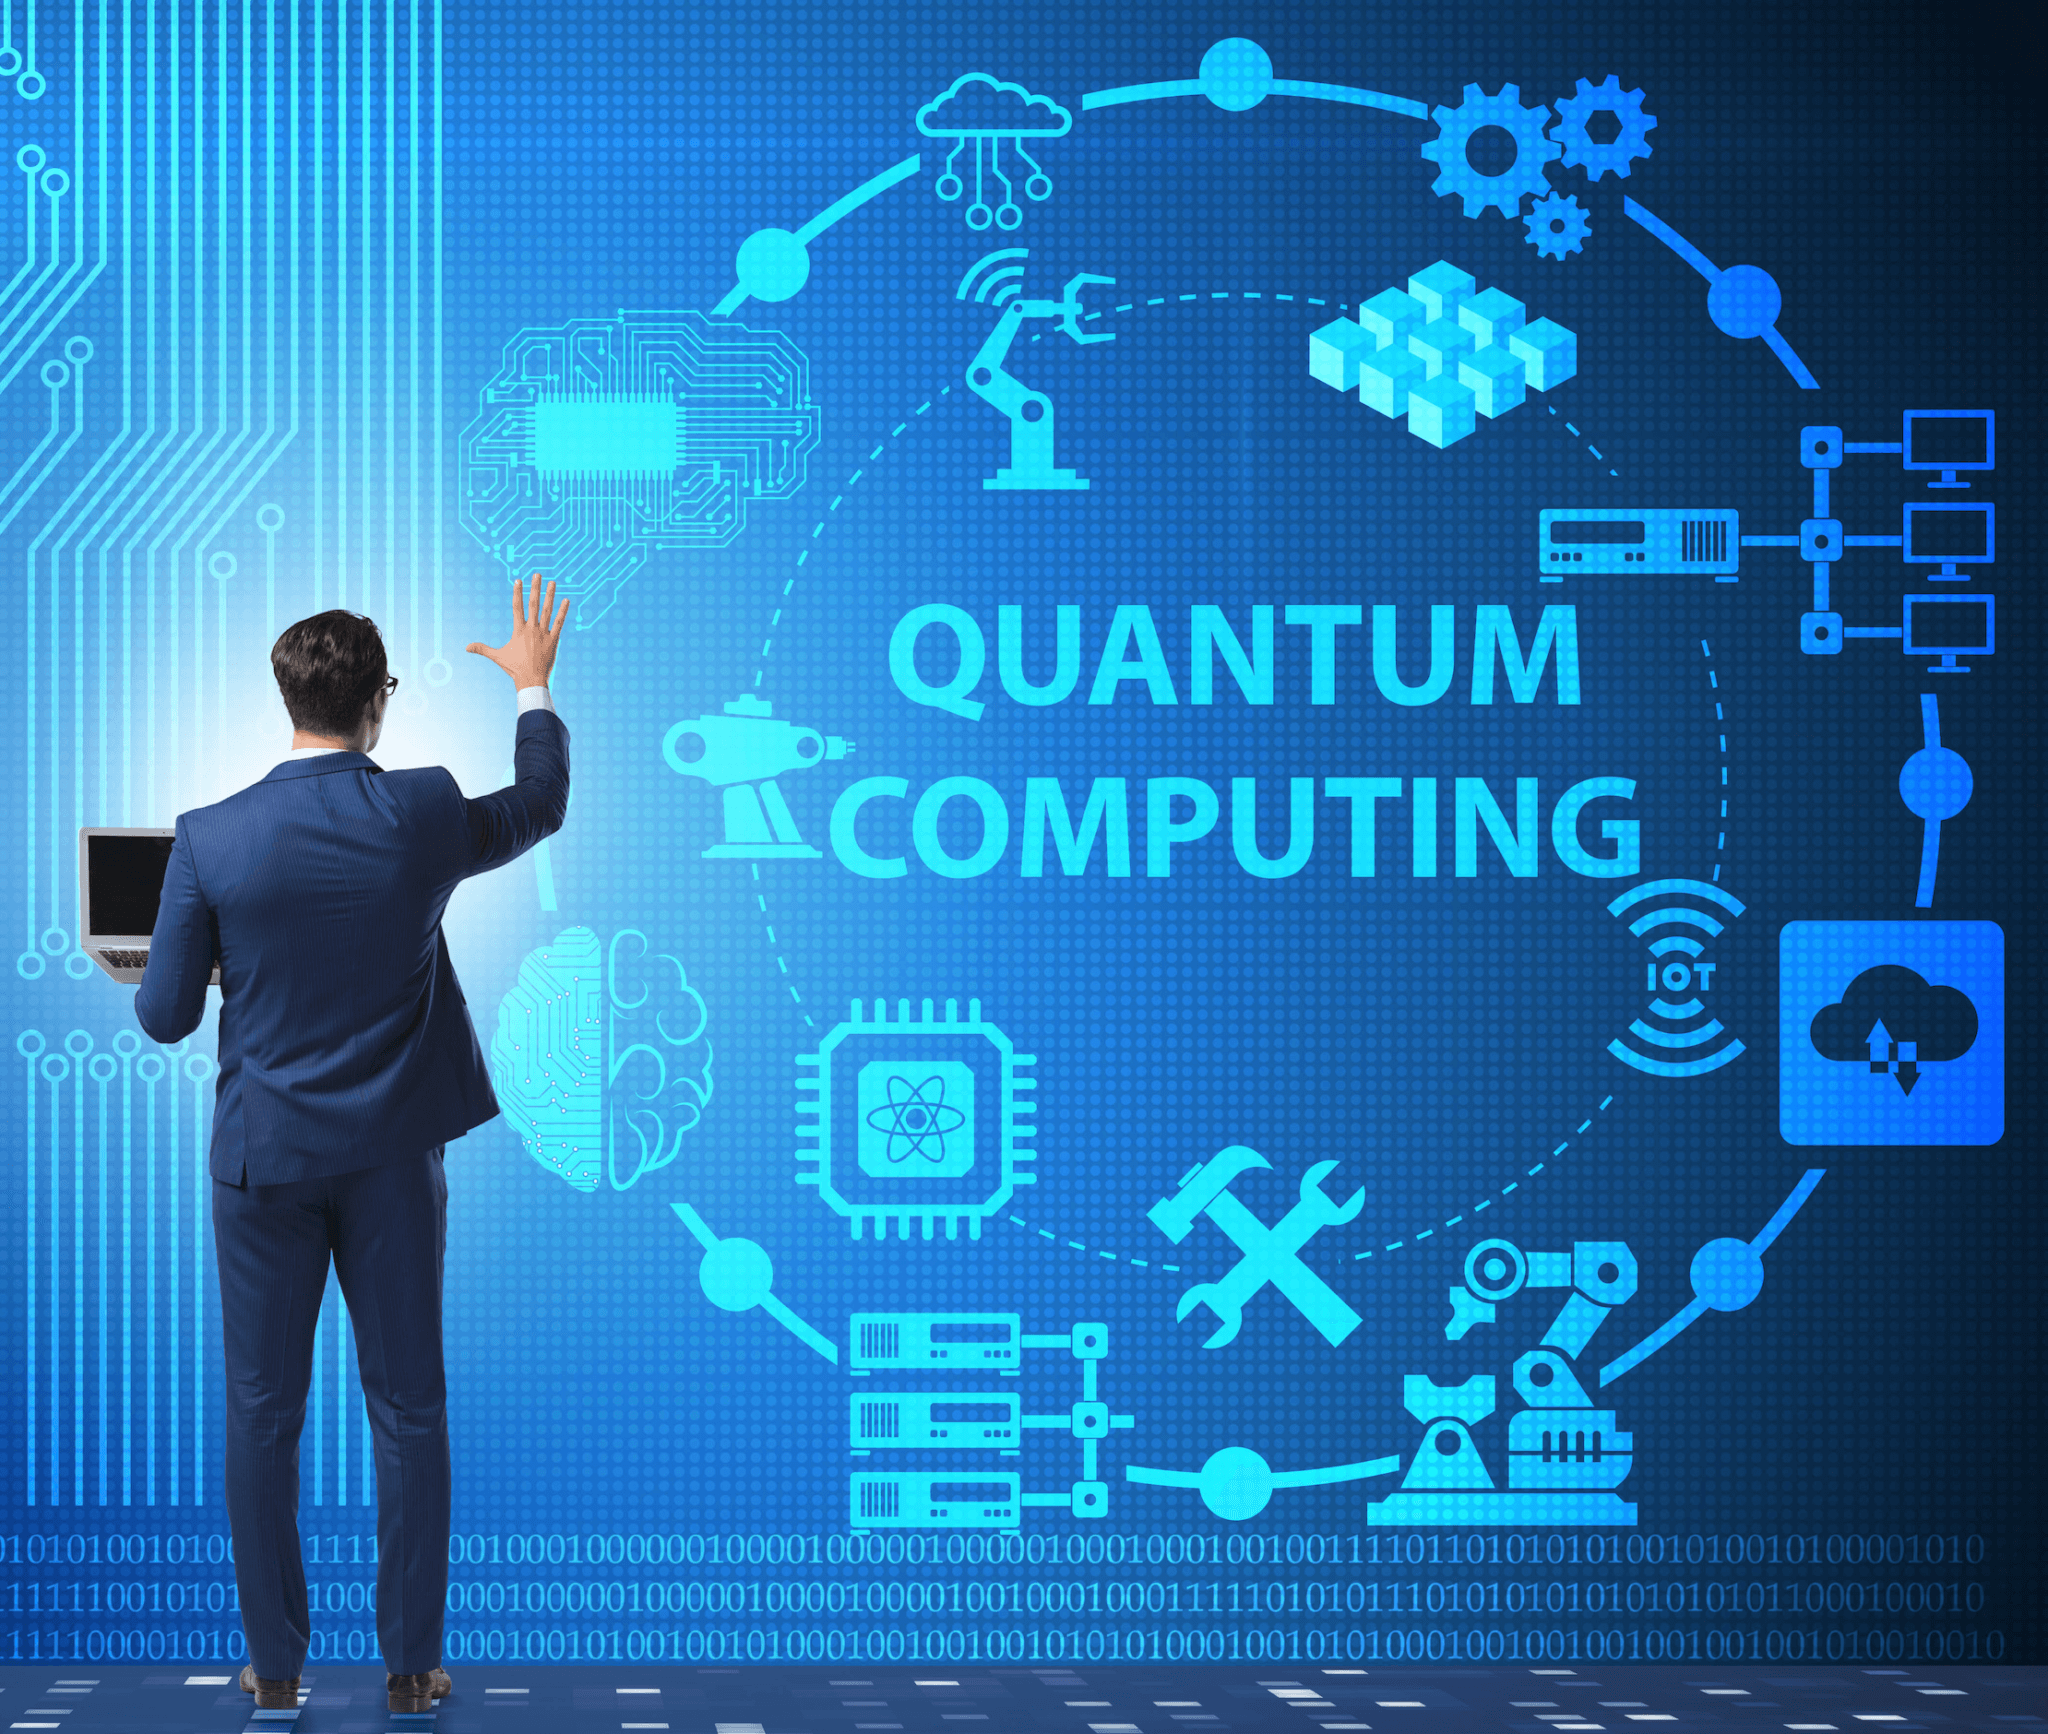 quantum-computing-quests-for-carbon-capture-compounds